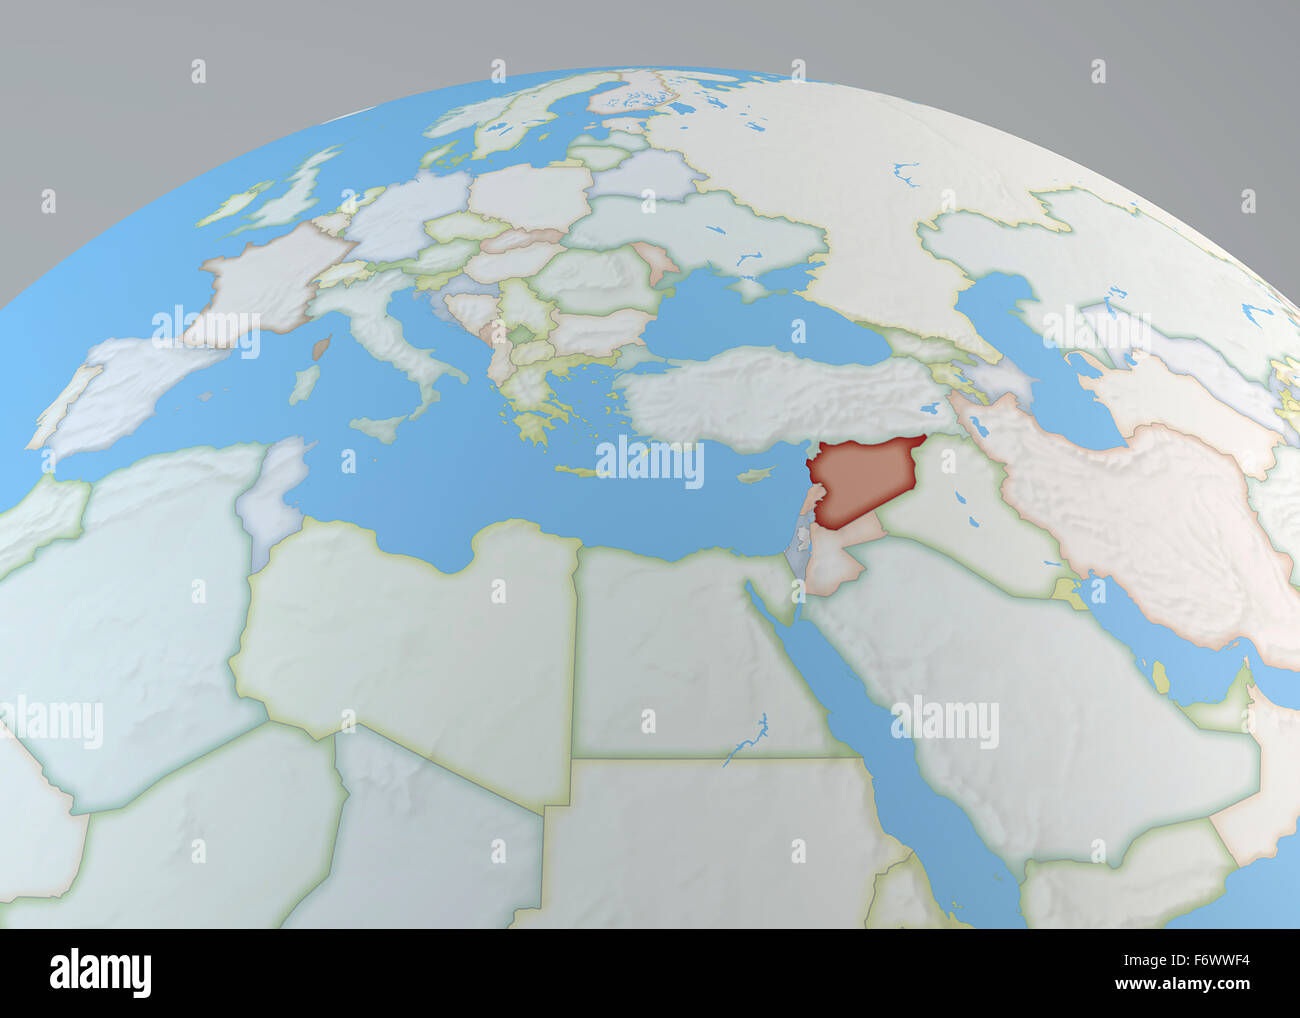 Weltkarte des Nahen Ostens mit Syrien hervorgehoben, Nordafrika und Europa Stockfoto